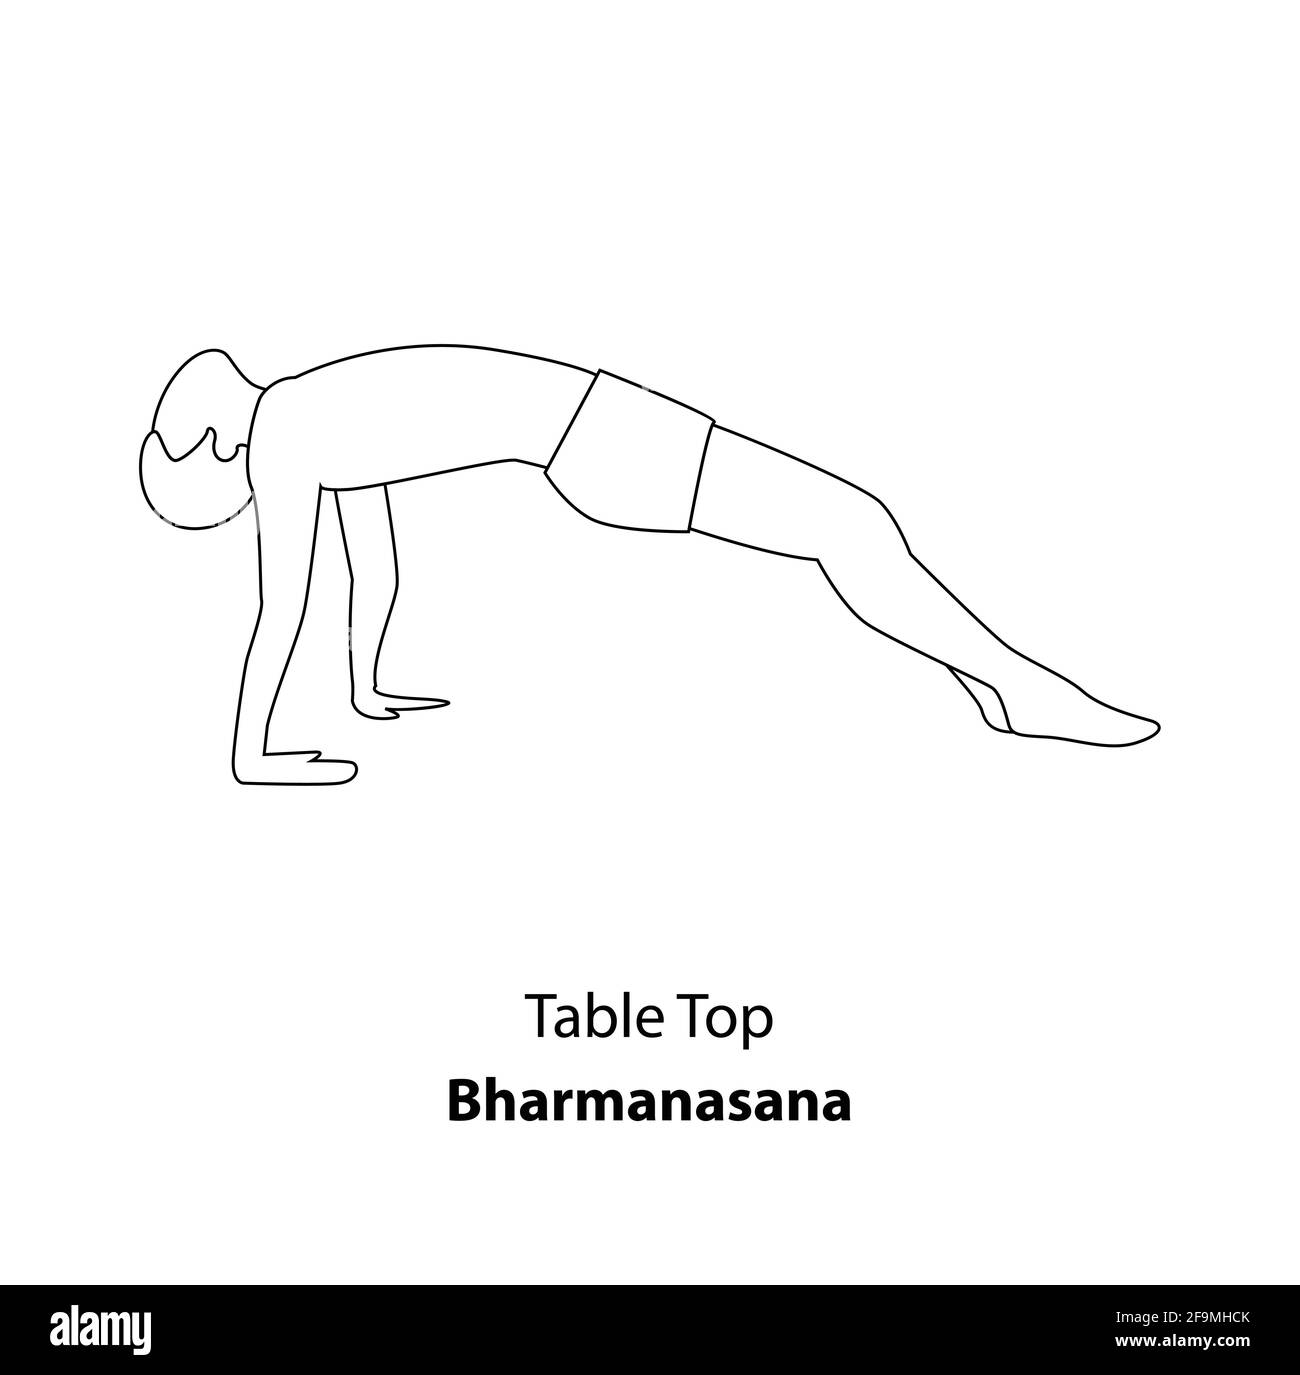 Homme pratiquant le yoga pose isolé contour Illustration. Homme debout dans Table Top pose Yoga ou Bharmanasana, icône de la ligne de Yoga Asana Illustration de Vecteur